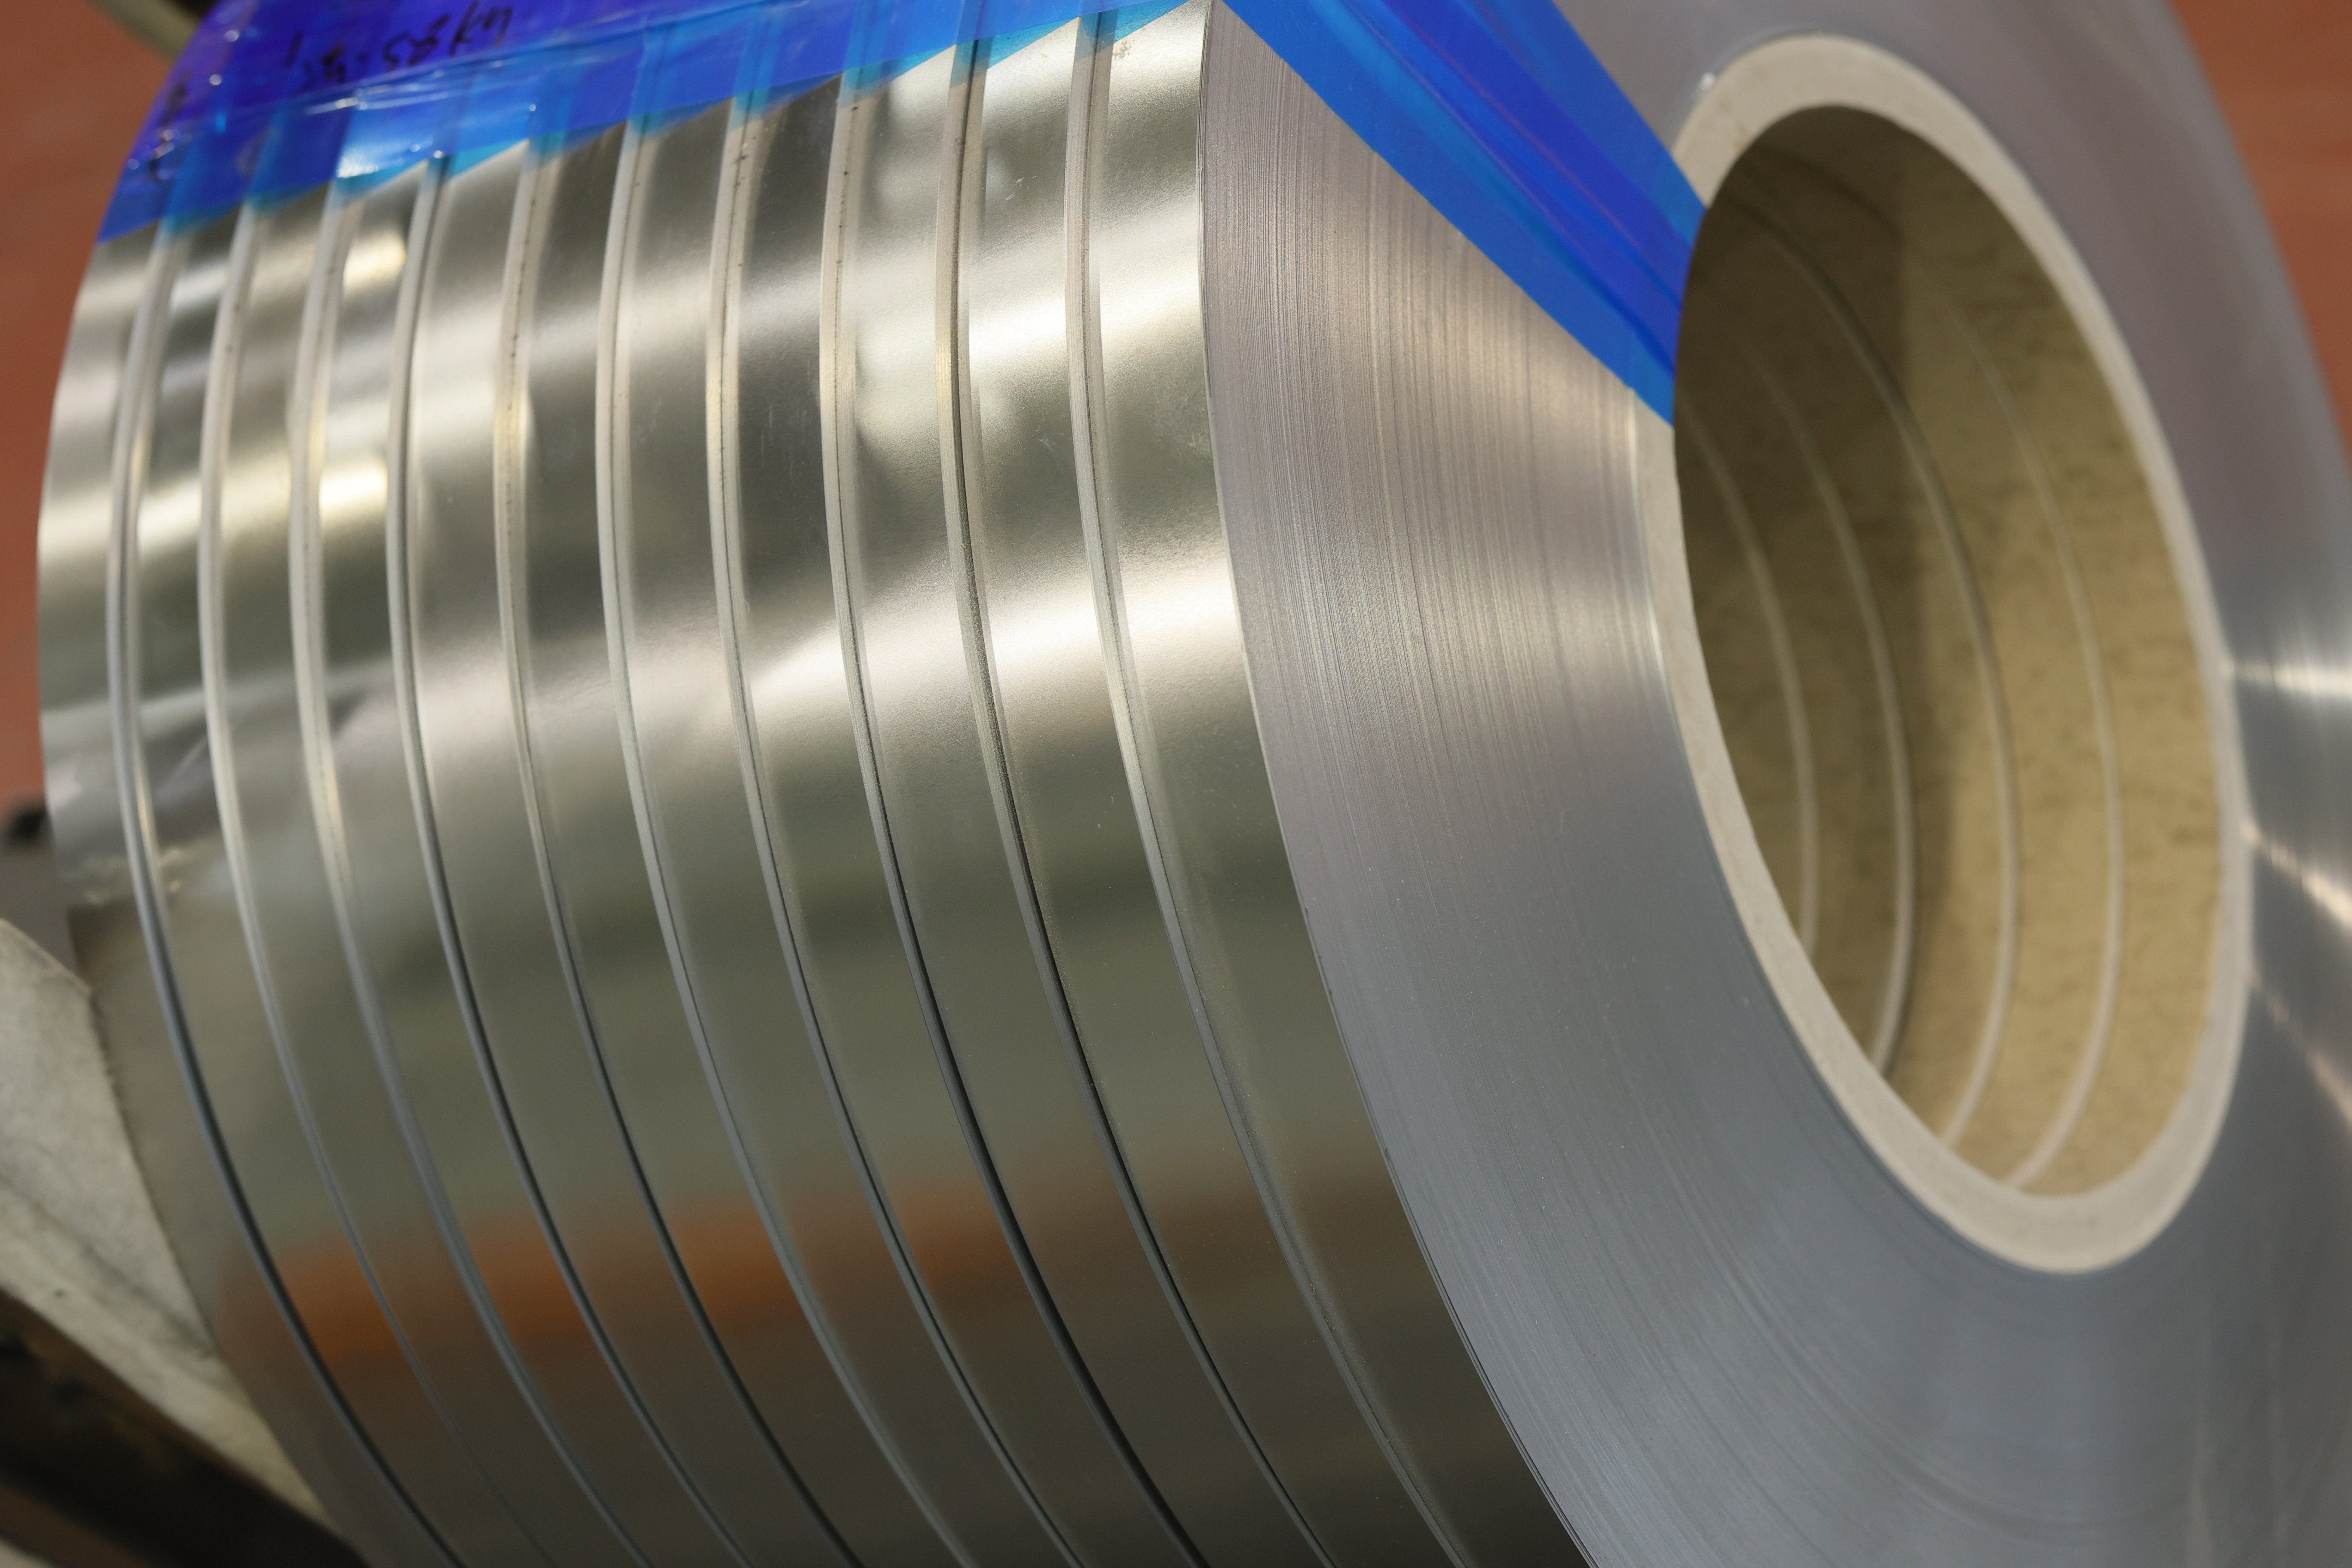 Bobinas de tiras de aço inoxidável ASTM grau 430 preço baixo de fábrica de alta qualidade laminados a frio/laminados a quente